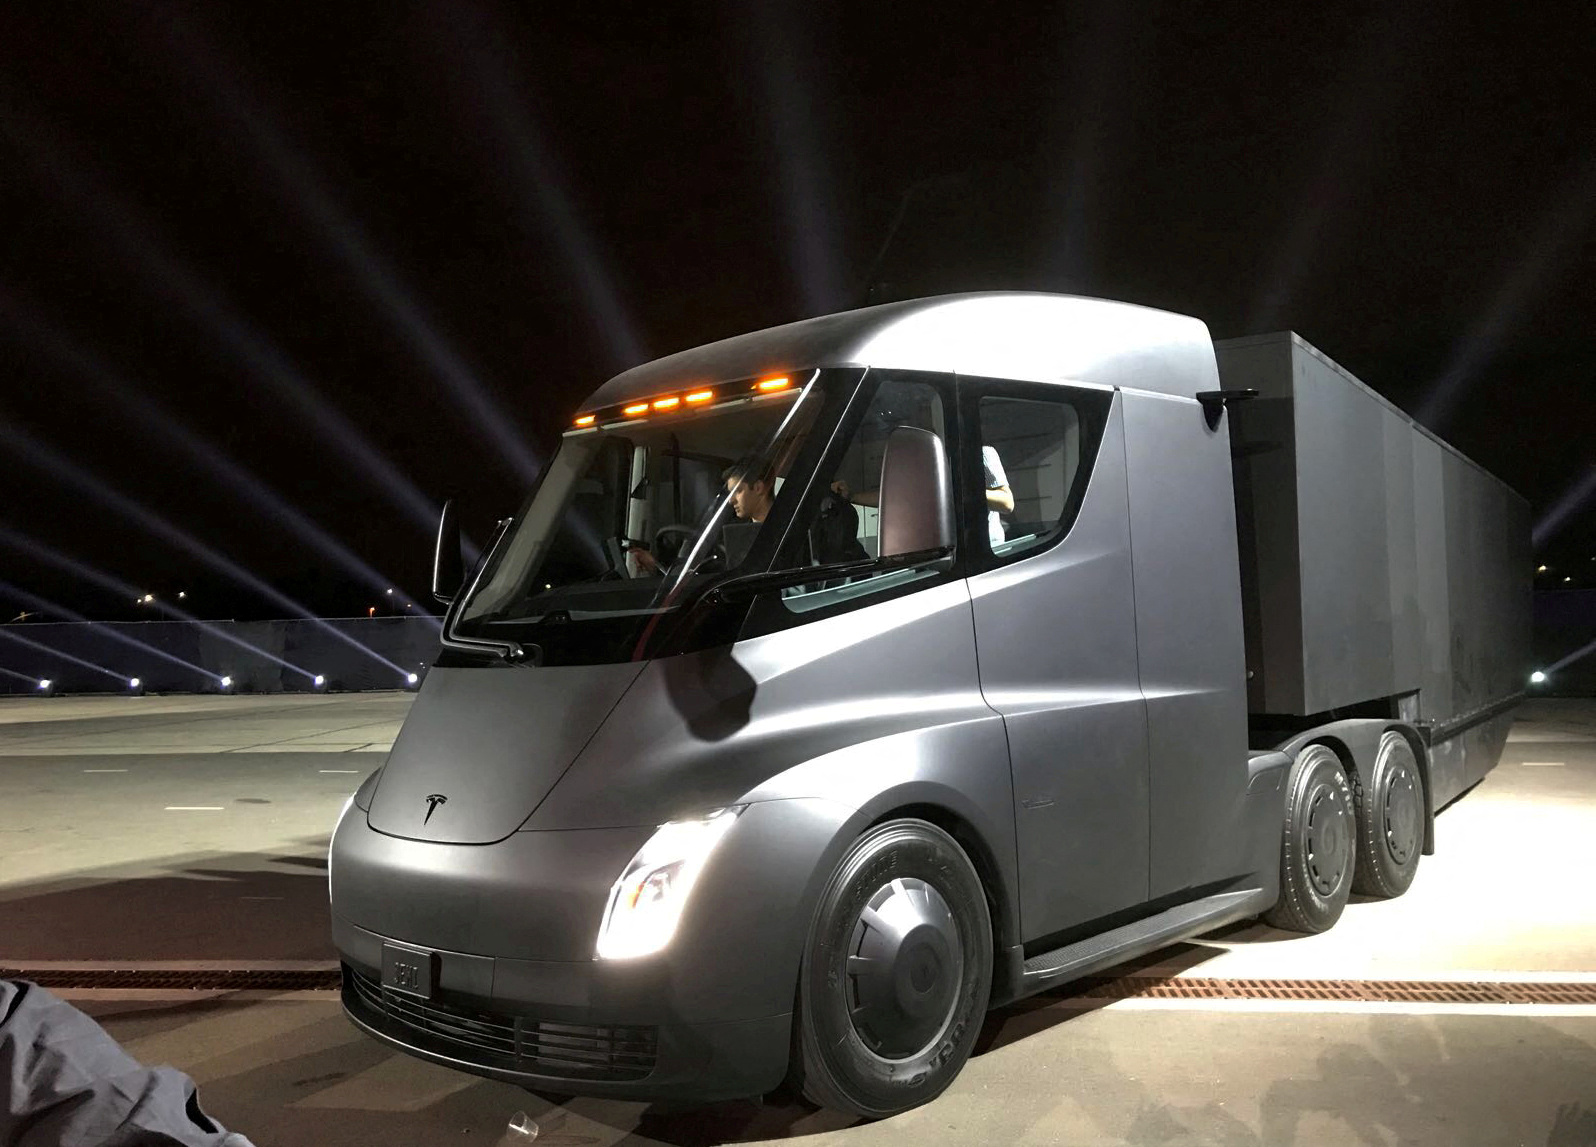 stykke Evolve Agent Nikola drops $2 bln patent lawsuit against Tesla over truck design | Reuters